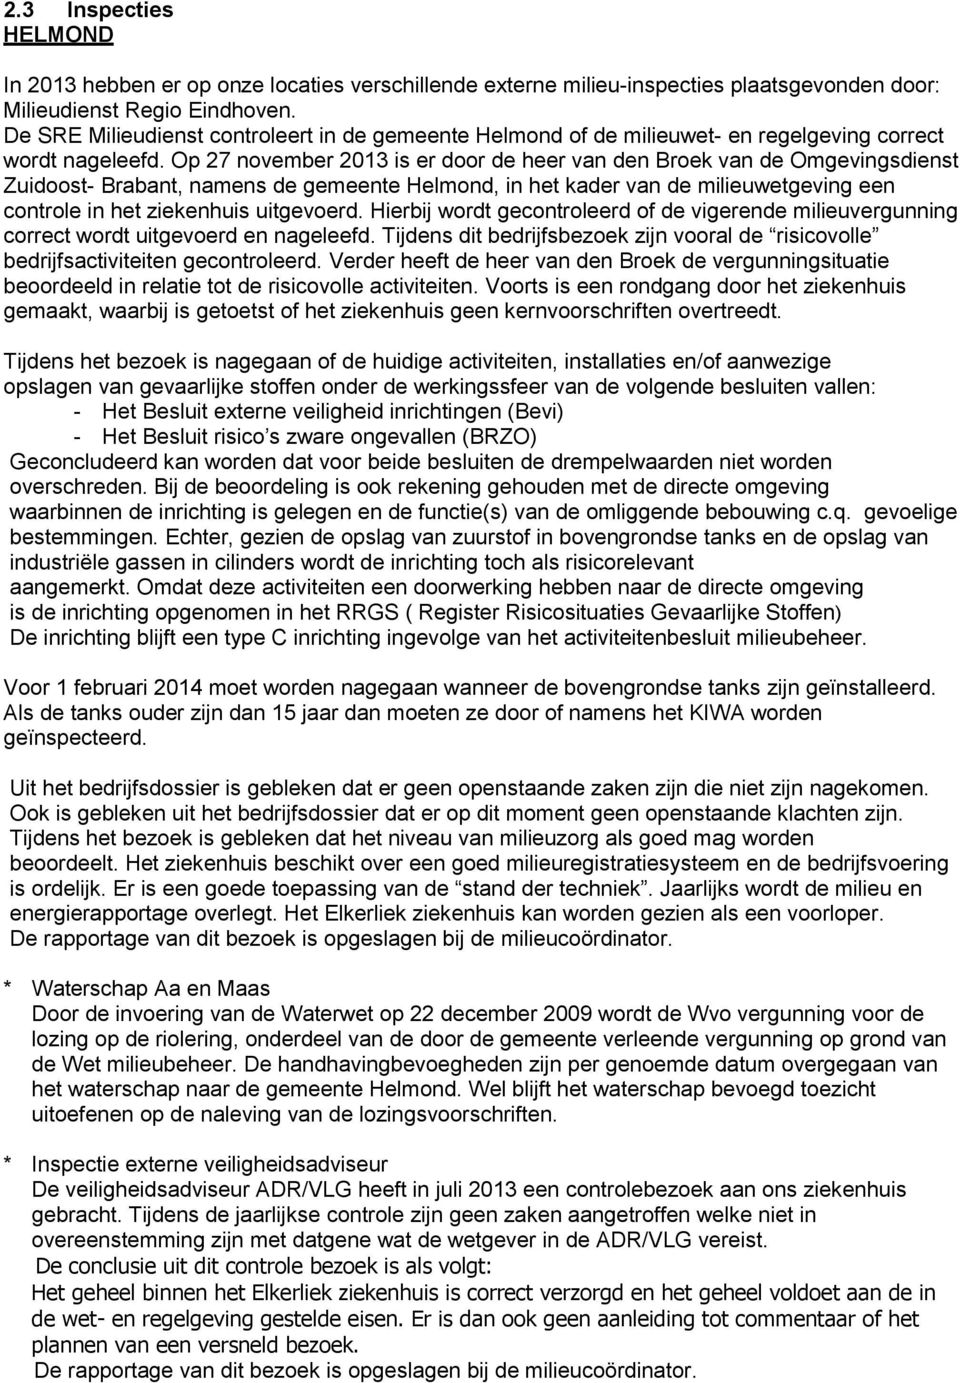 Op 27 november 2013 is er door de heer van den Broek van de Omgevingsdienst Zuidoost- Brabant, namens de gemeente Helmond, in het kader van de milieuwetgeving een controle in het ziekenhuis